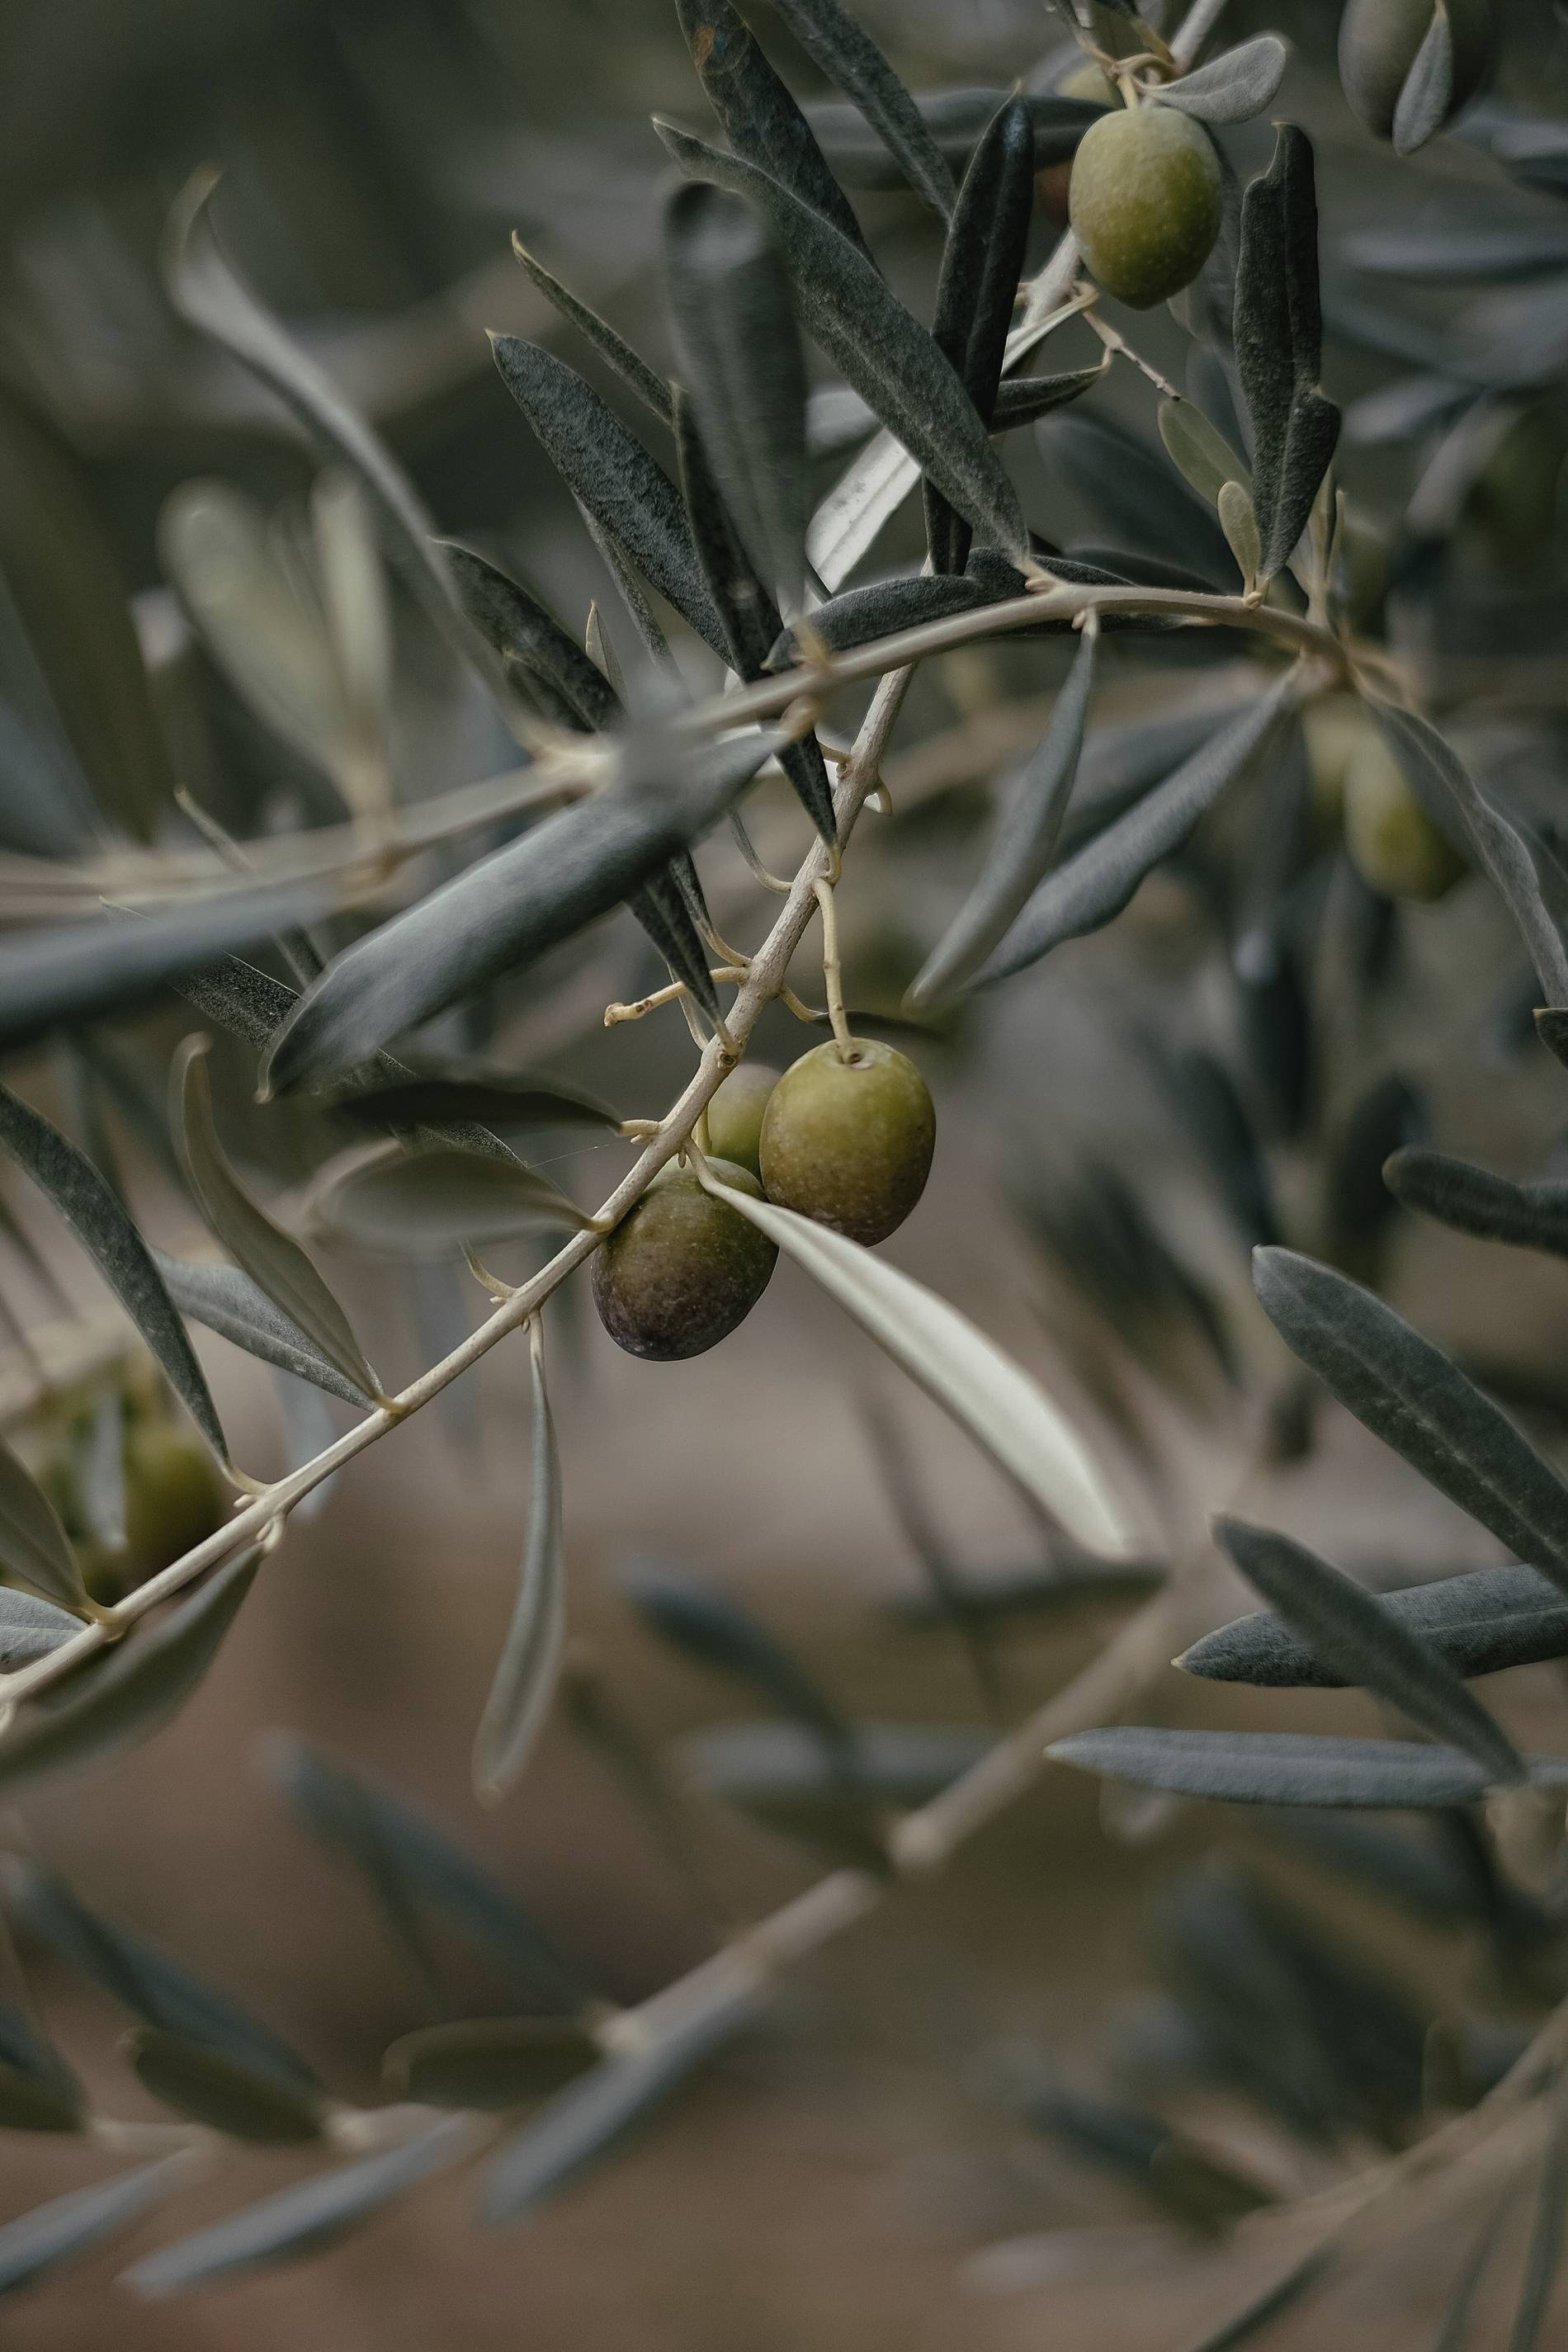 toscana-olives-emre-unsplash.jpg